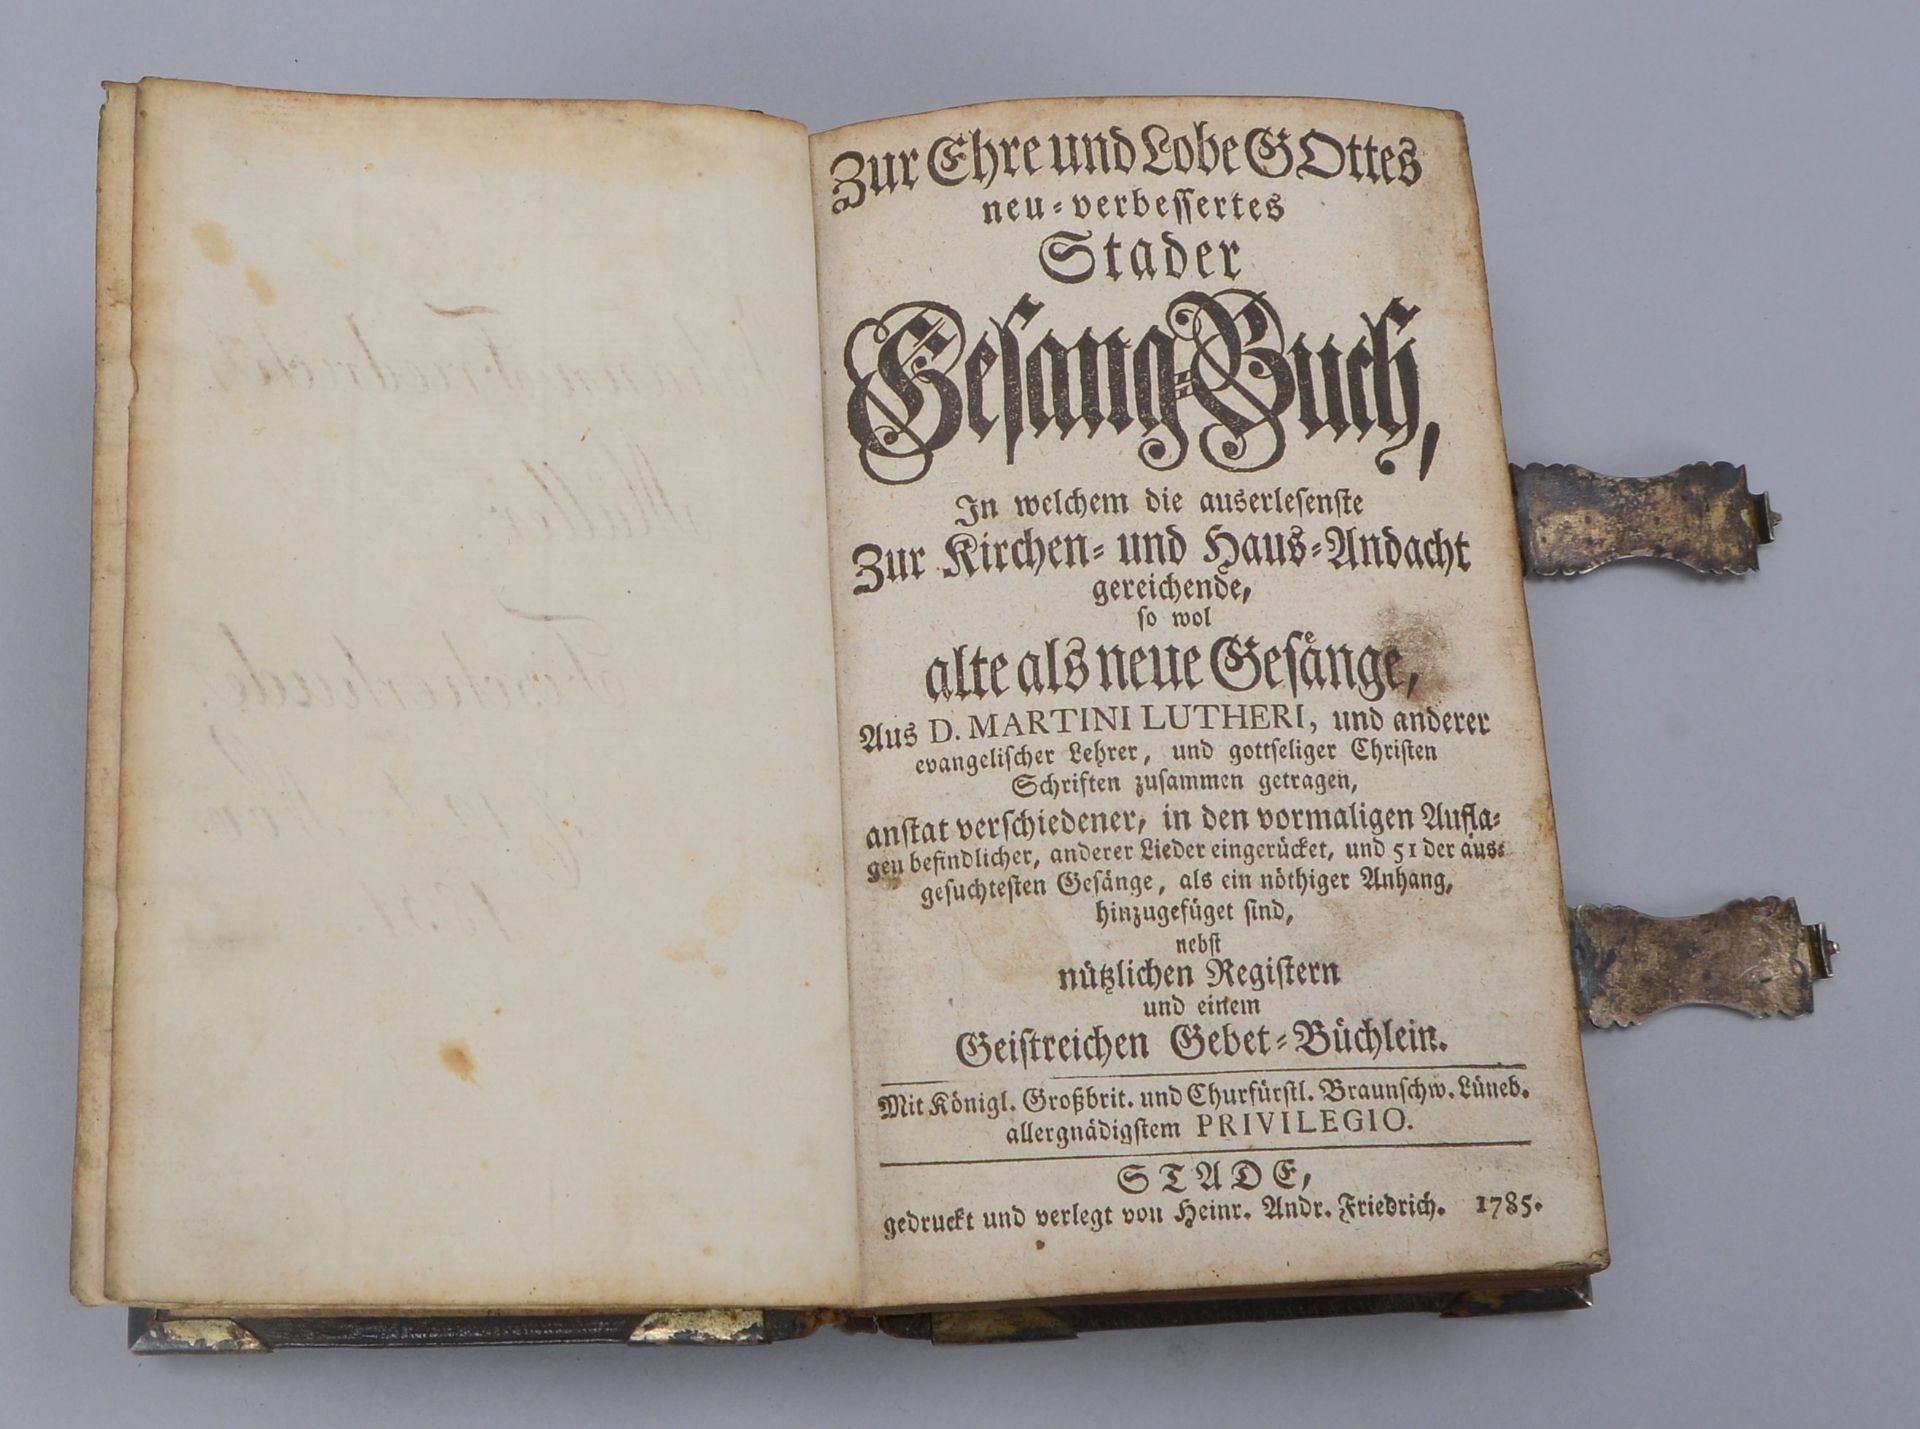 Altes Gesangbuch (Stade: Heinrich Andreas Friedrich, 1785), Band mit schwarzem Ledereinband, gepr&au